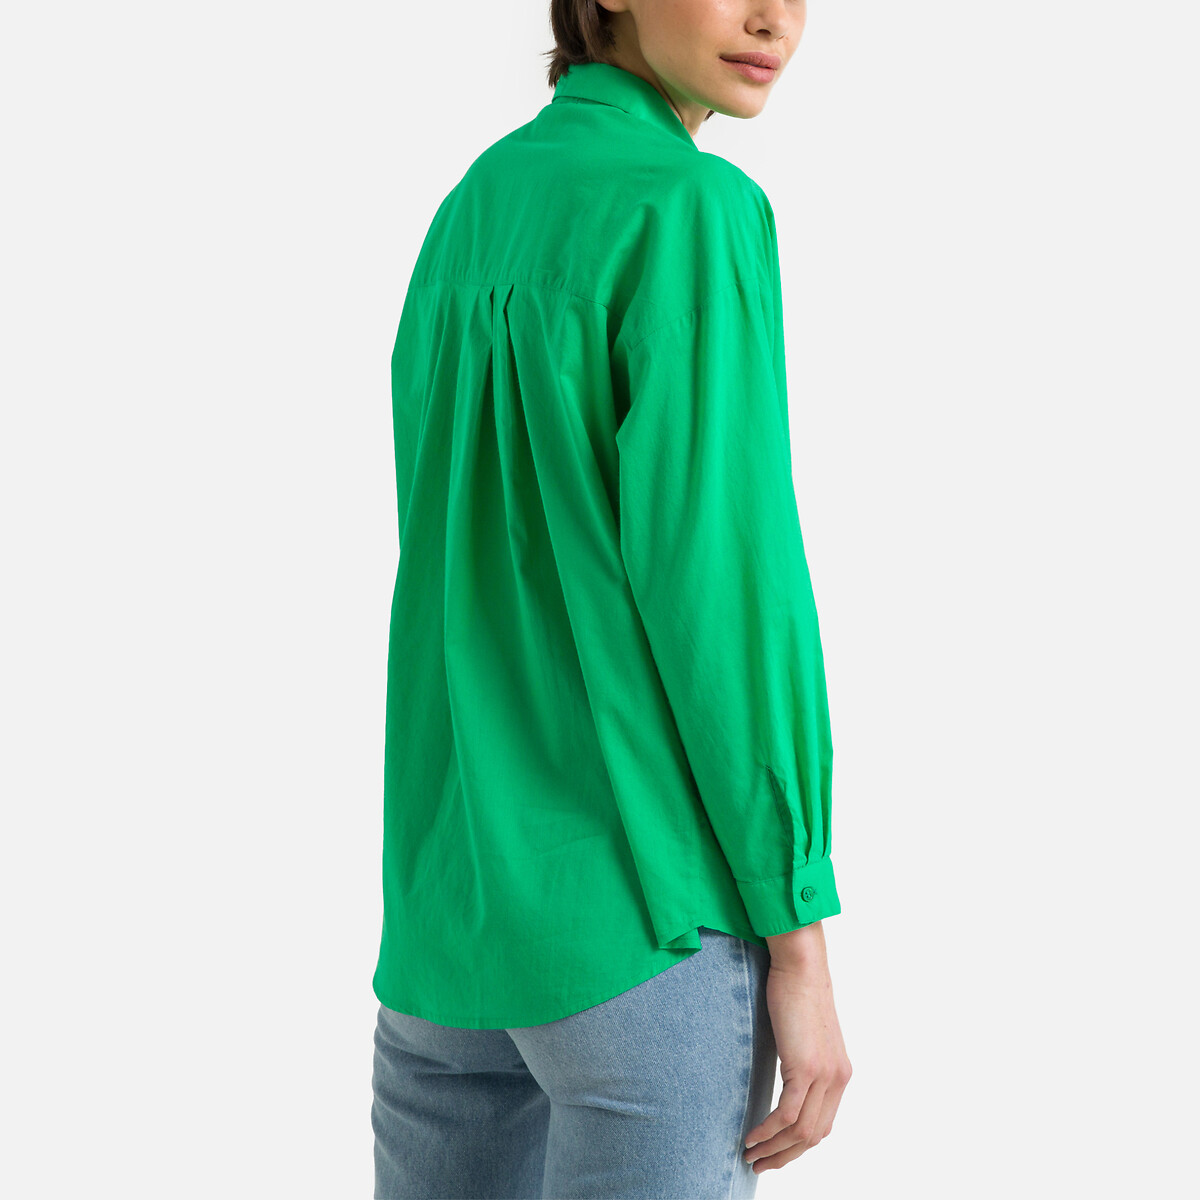 Рубашка С длинными рукавами MENTHE 3(L) зеленый LaRedoute, размер 3(L) Рубашка С длинными рукавами MENTHE 3(L) зеленый - фото 4